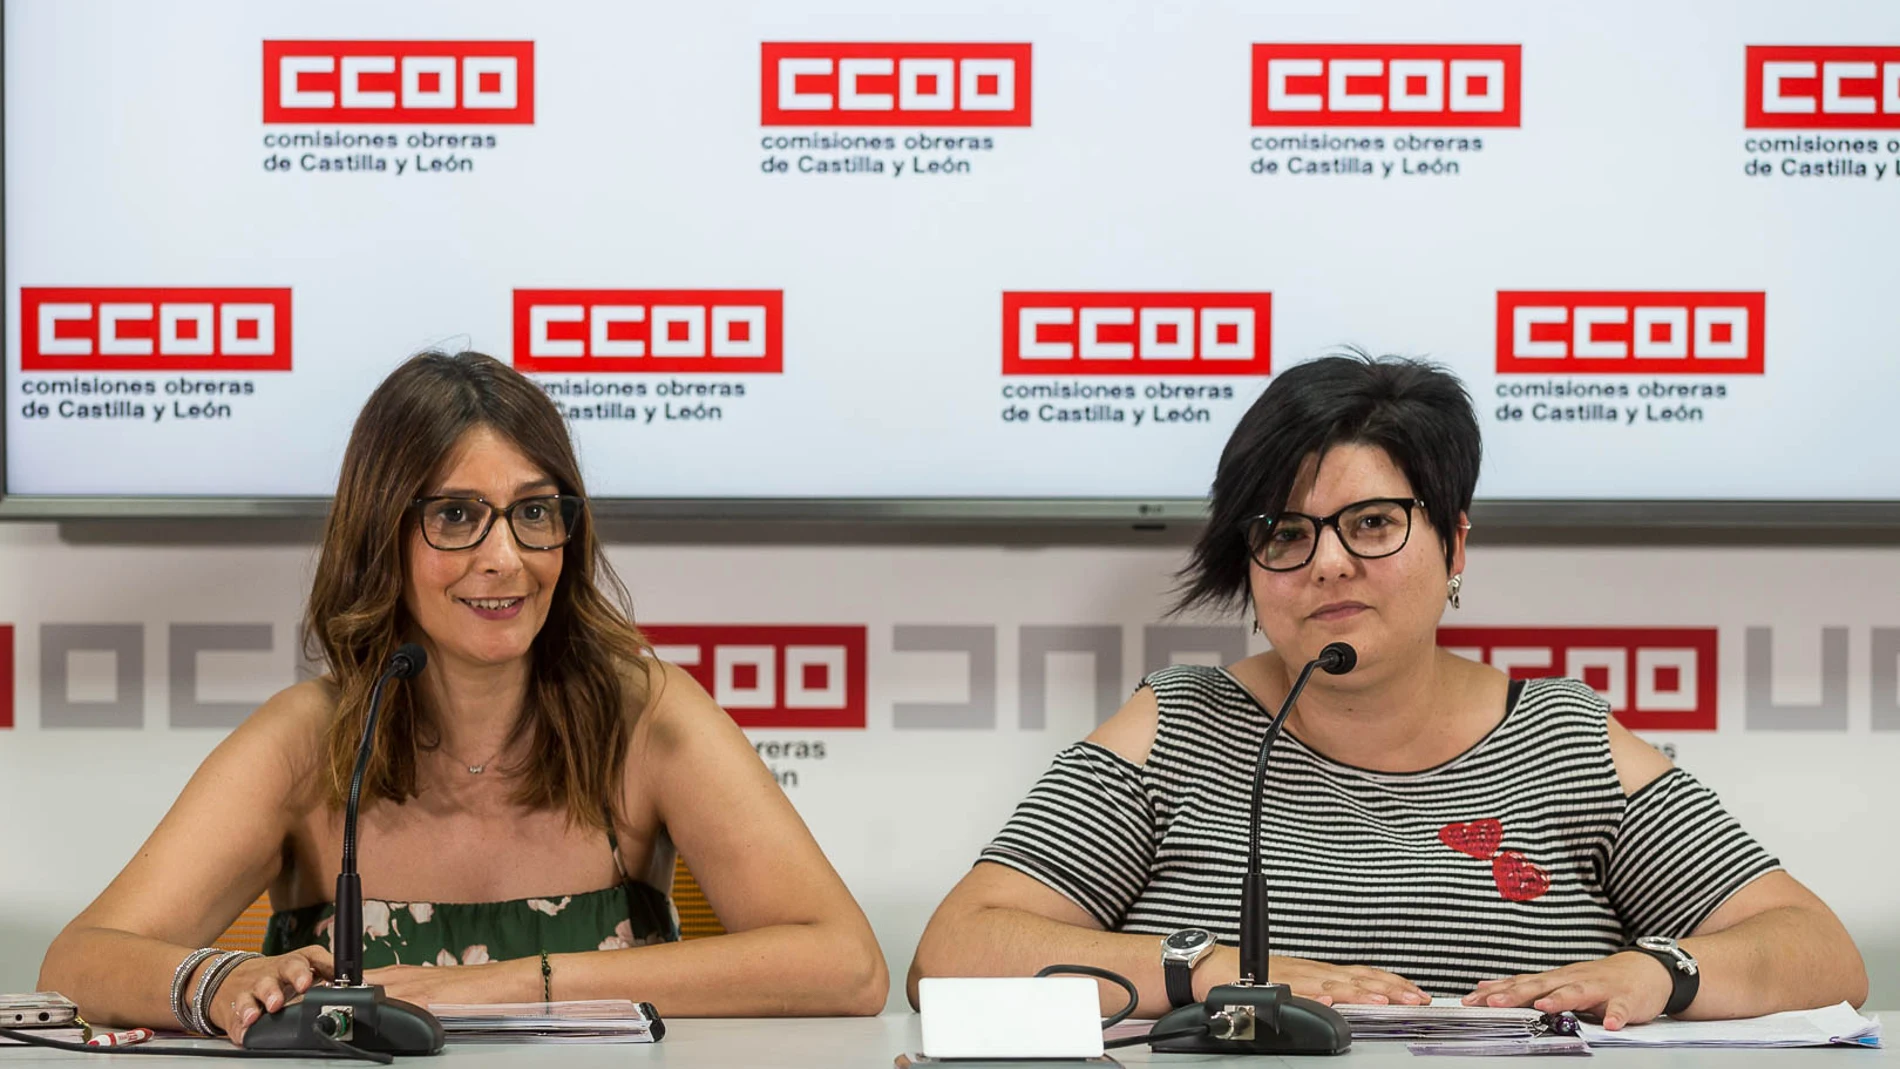 La secretaria de Mujer y Políticas de Igualdad de CCOO Castilla y León, Yolanda Martín, y la agente de Igualdad del sindicato María Sánchez